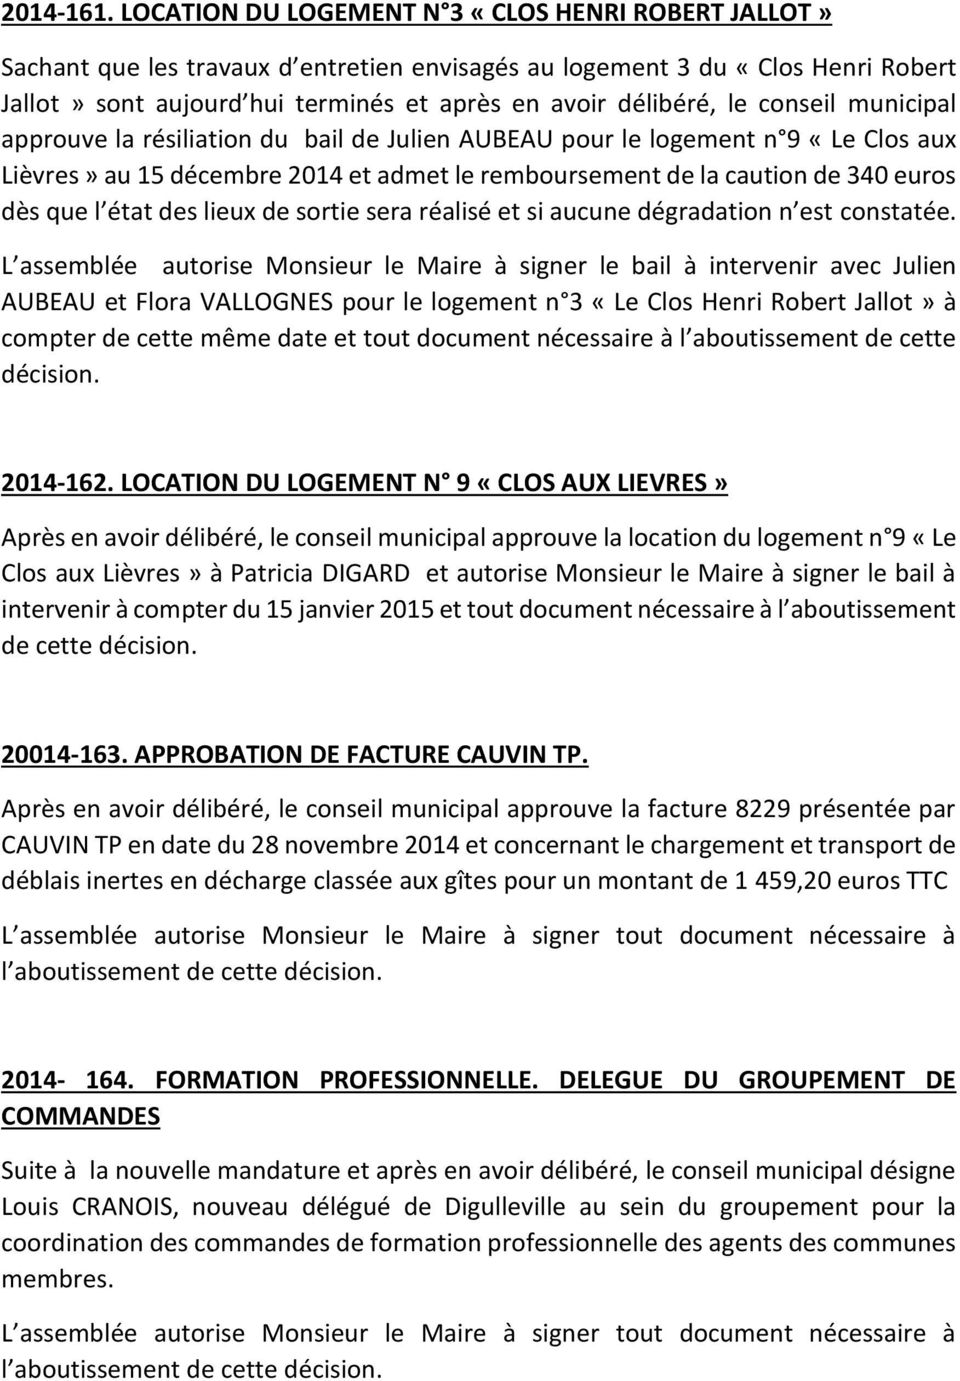 conseil municipal approuve la résiliation du bail de Julien AUBEAU pour le logement n 9 «Le Clos aux Lièvres» au 15 décembre 2014 et admet le remboursement de la caution de 340 euros dès que l état